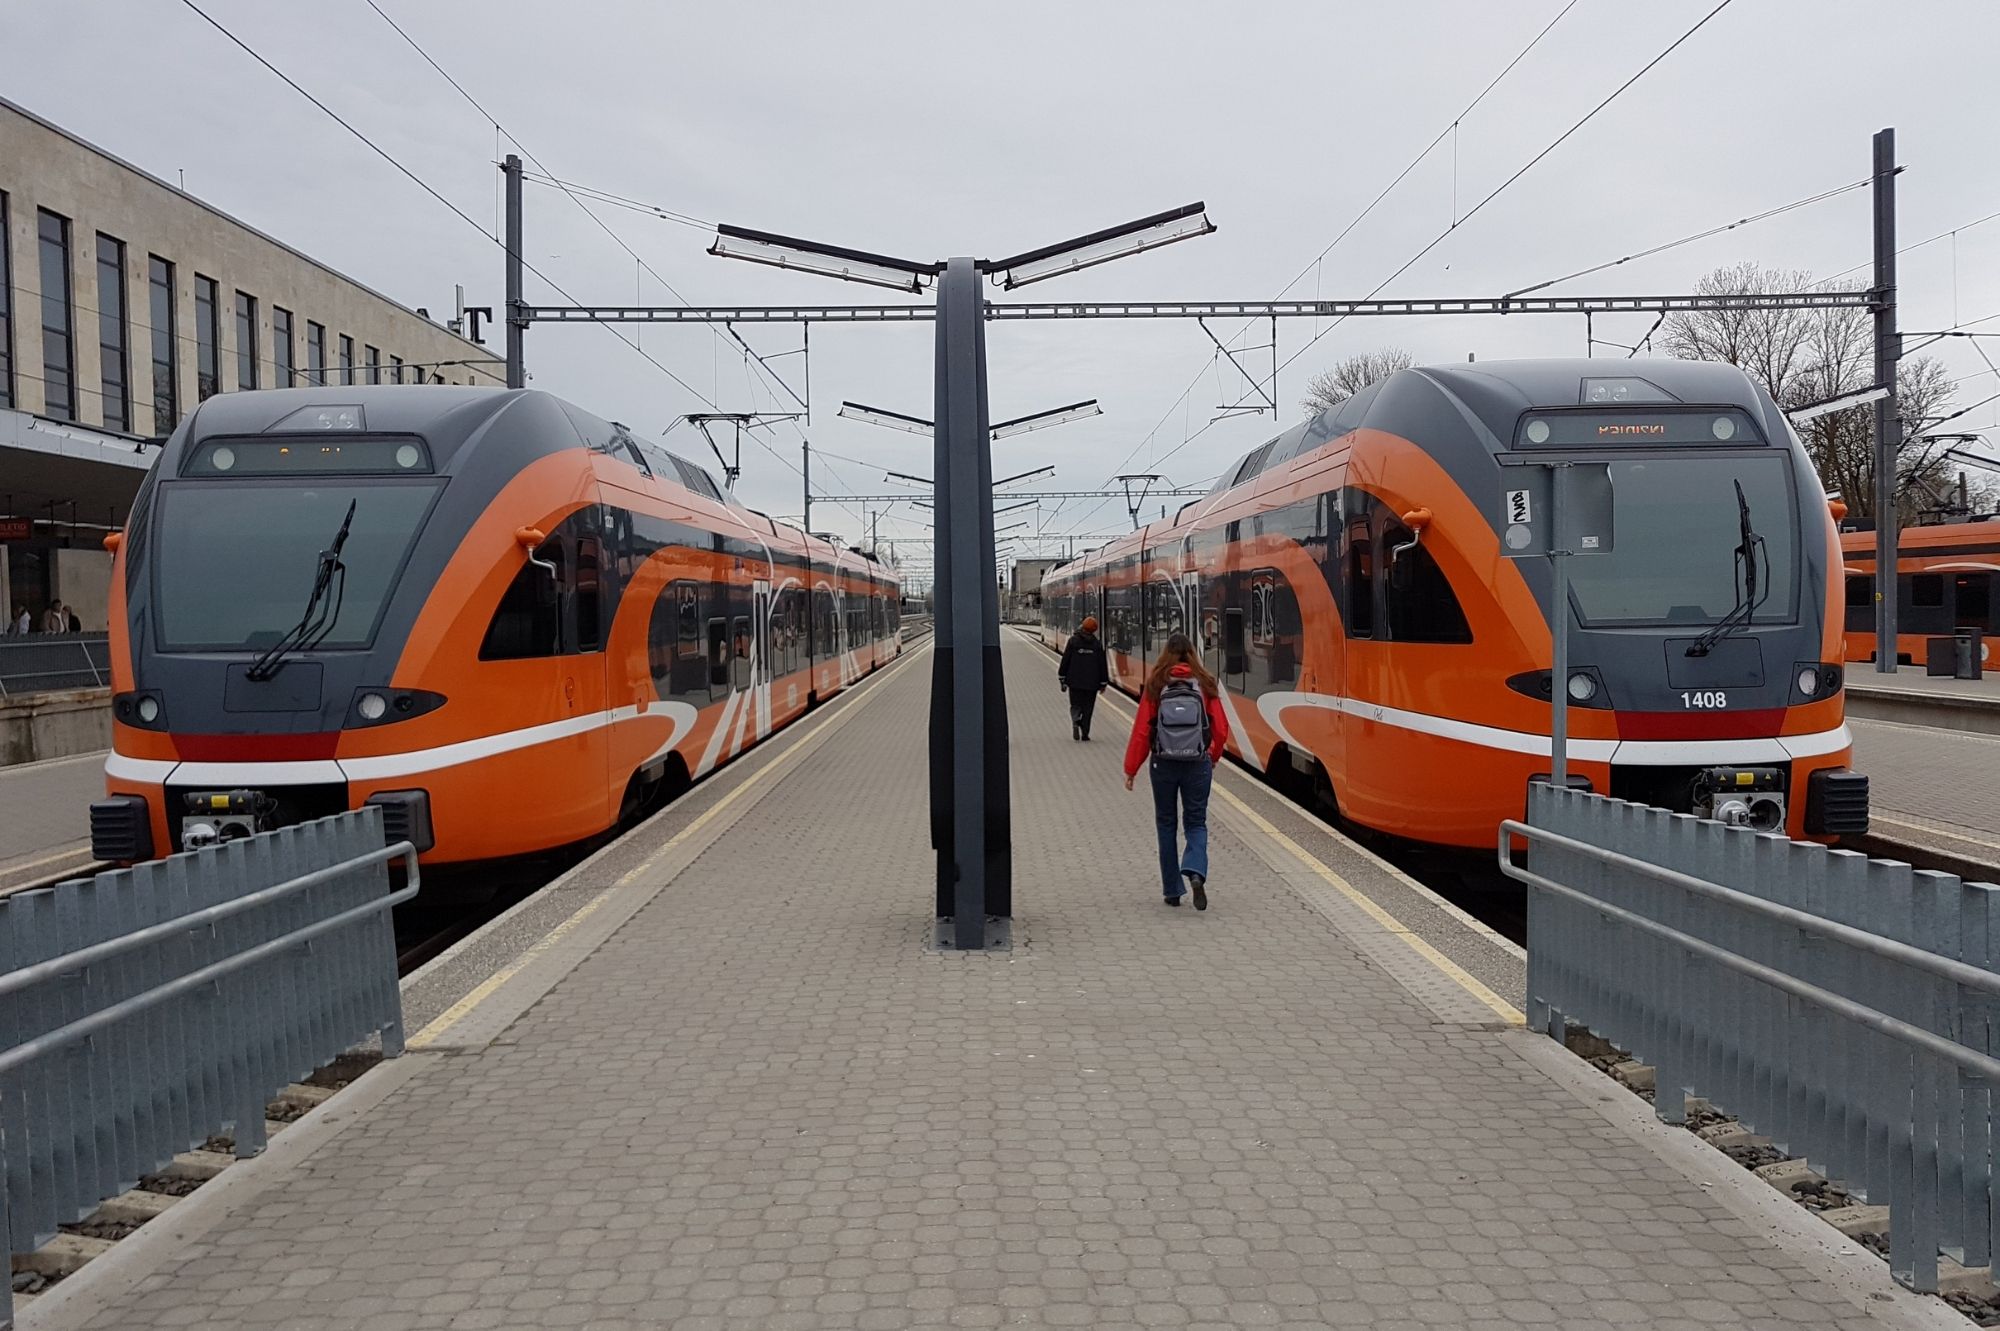 Украинские беженцы могут бесплатно пользоваться общественным транспортом по всей Эстонии. Автор фото: Vitali Faktulin.